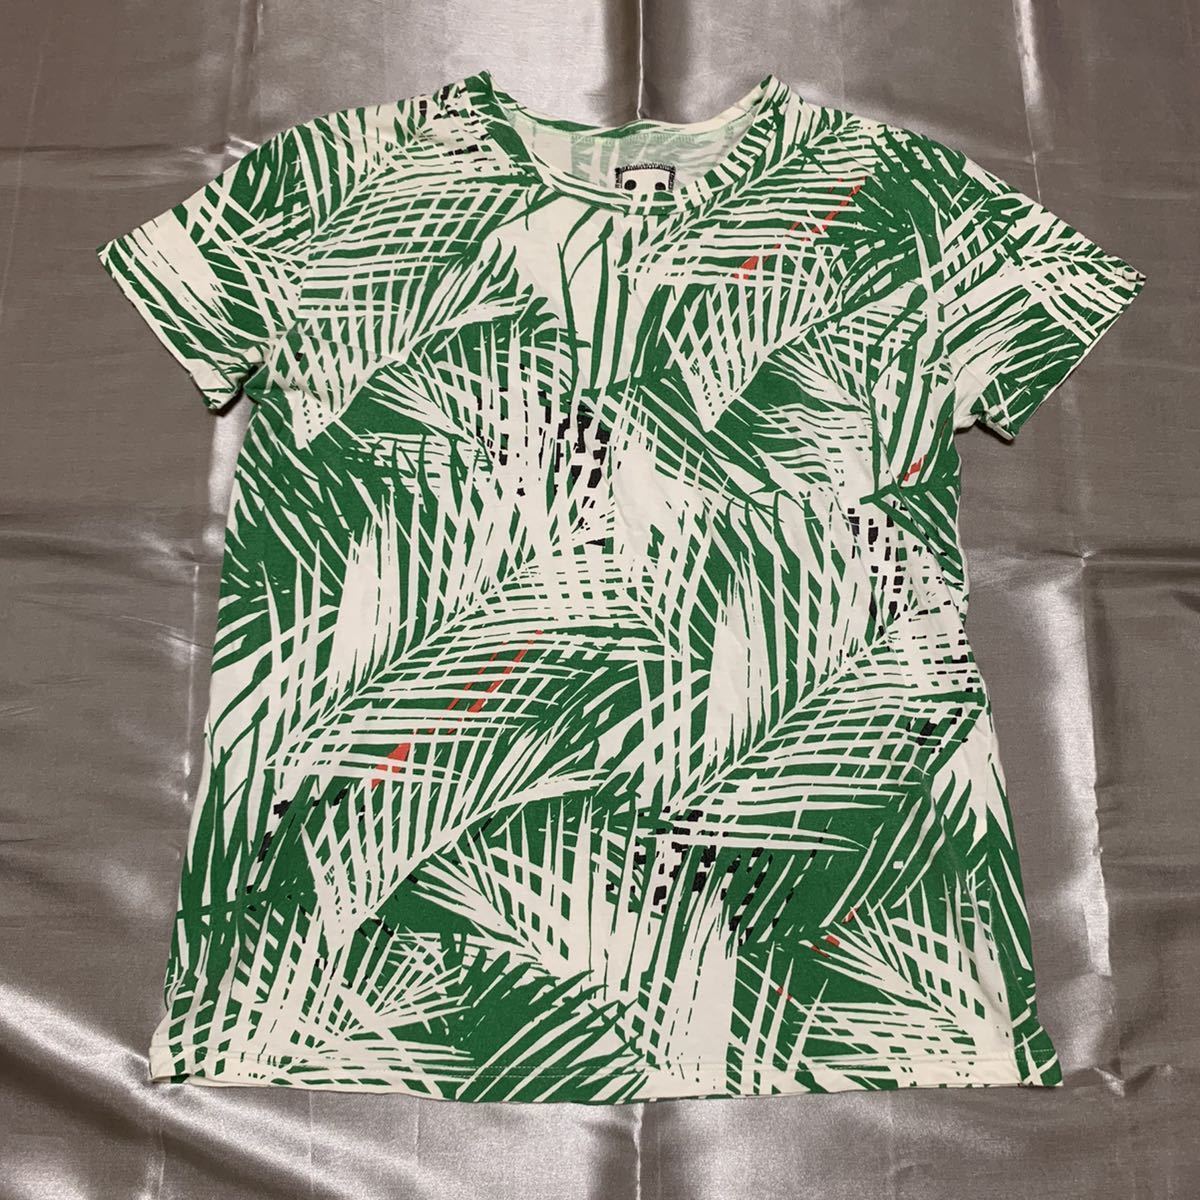 株式会社 シップス サイズS 最高級 半袖Tシャツ 半袖トップス 白 1-312 新発売 グリーン緑 ホワイト